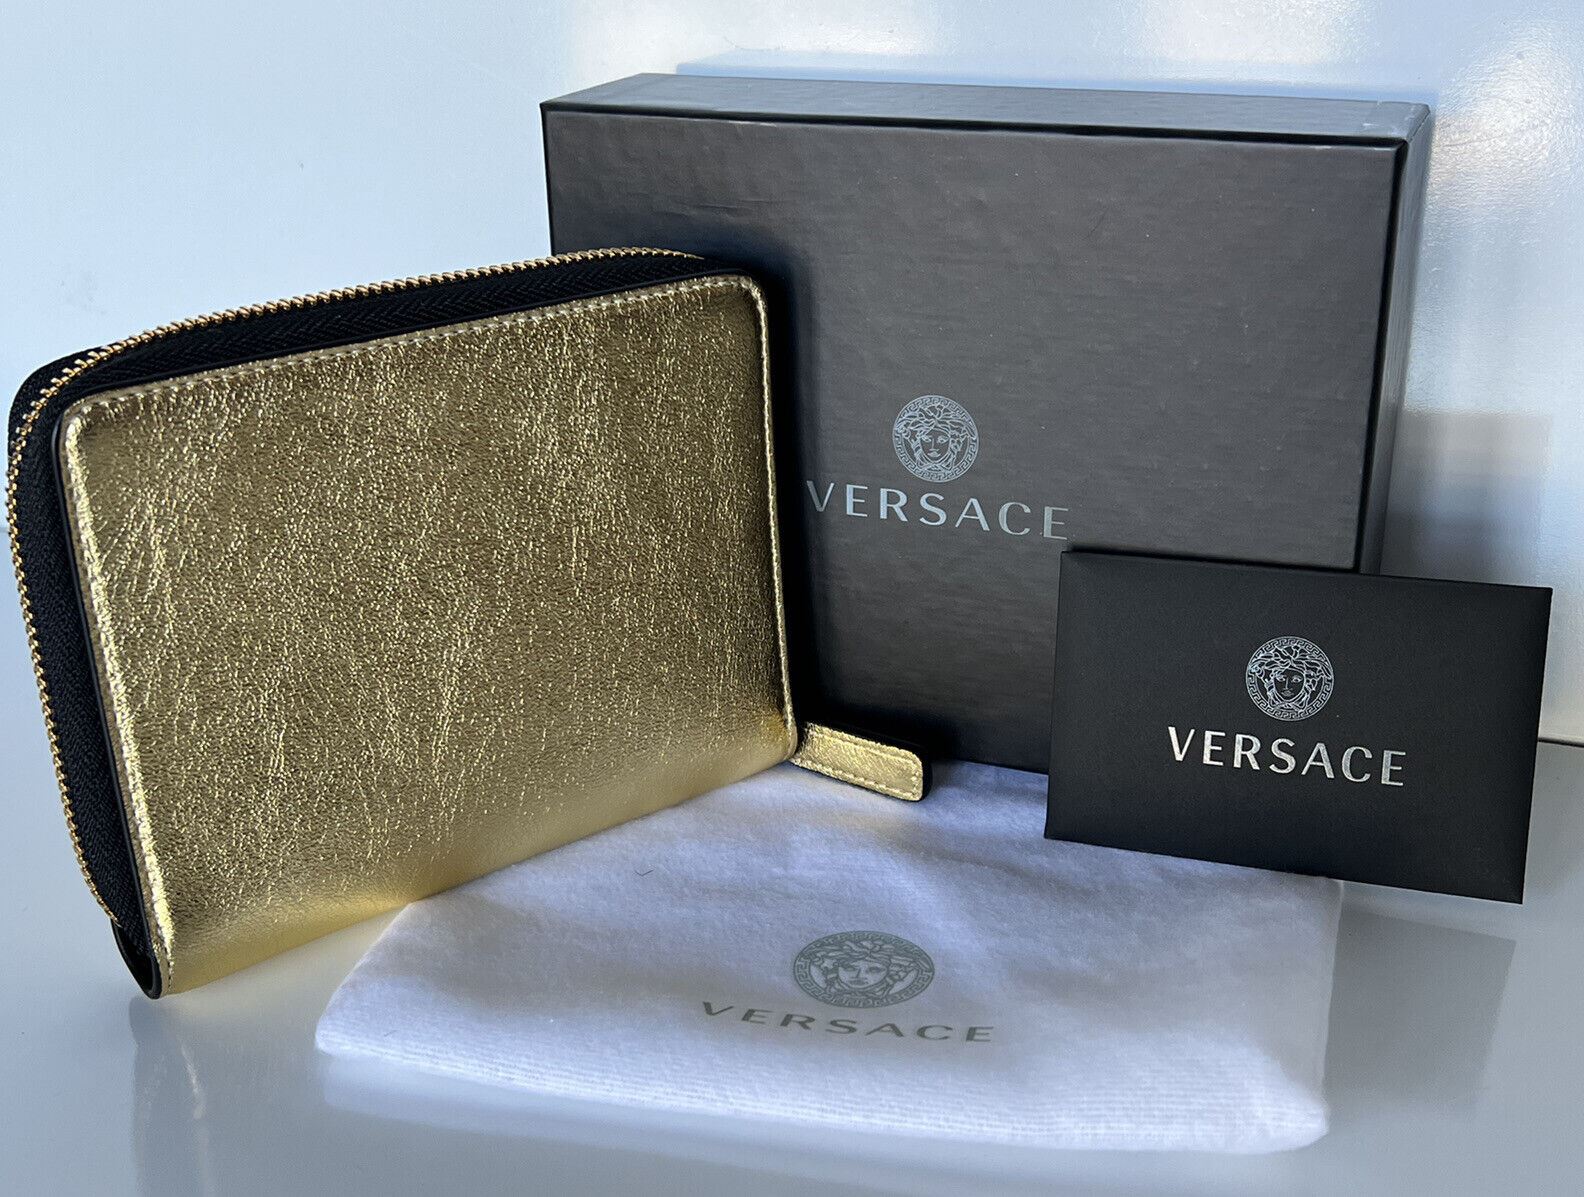 Neu mit Etikett: Versace Gold/Pink/Silber Kalbsleder-Geldbörse mit mittlerem Reißverschluss, hergestellt in Italien 593 